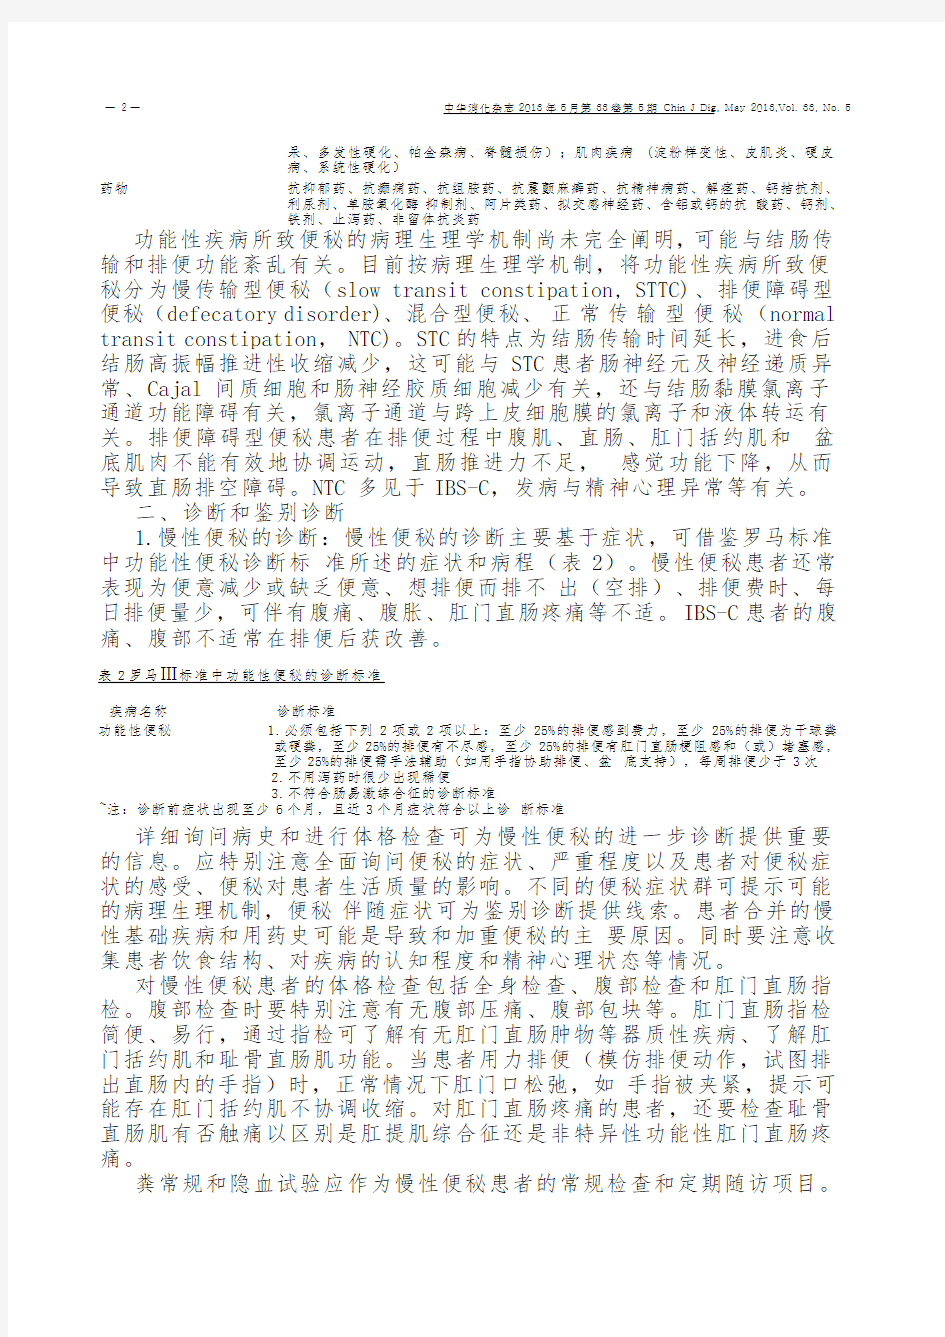 中国慢性便秘诊治指南(2013年,武汉)